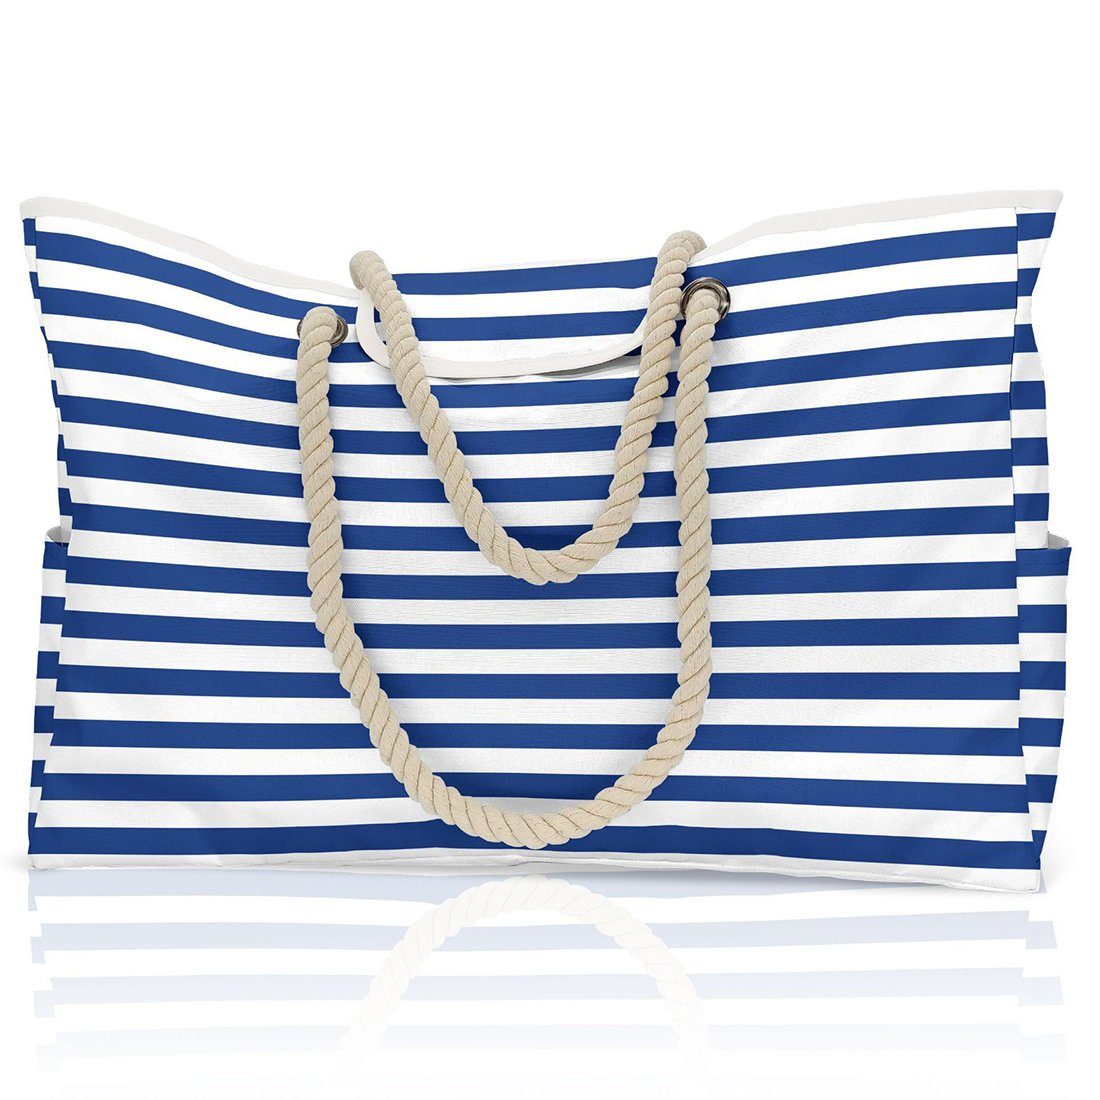 Haiaveng Strandtasche Strandtasche,Wasserdicht Streifen Strandtasche, Badetasche,Grosse Strandtasche blue | Trachtentaschen